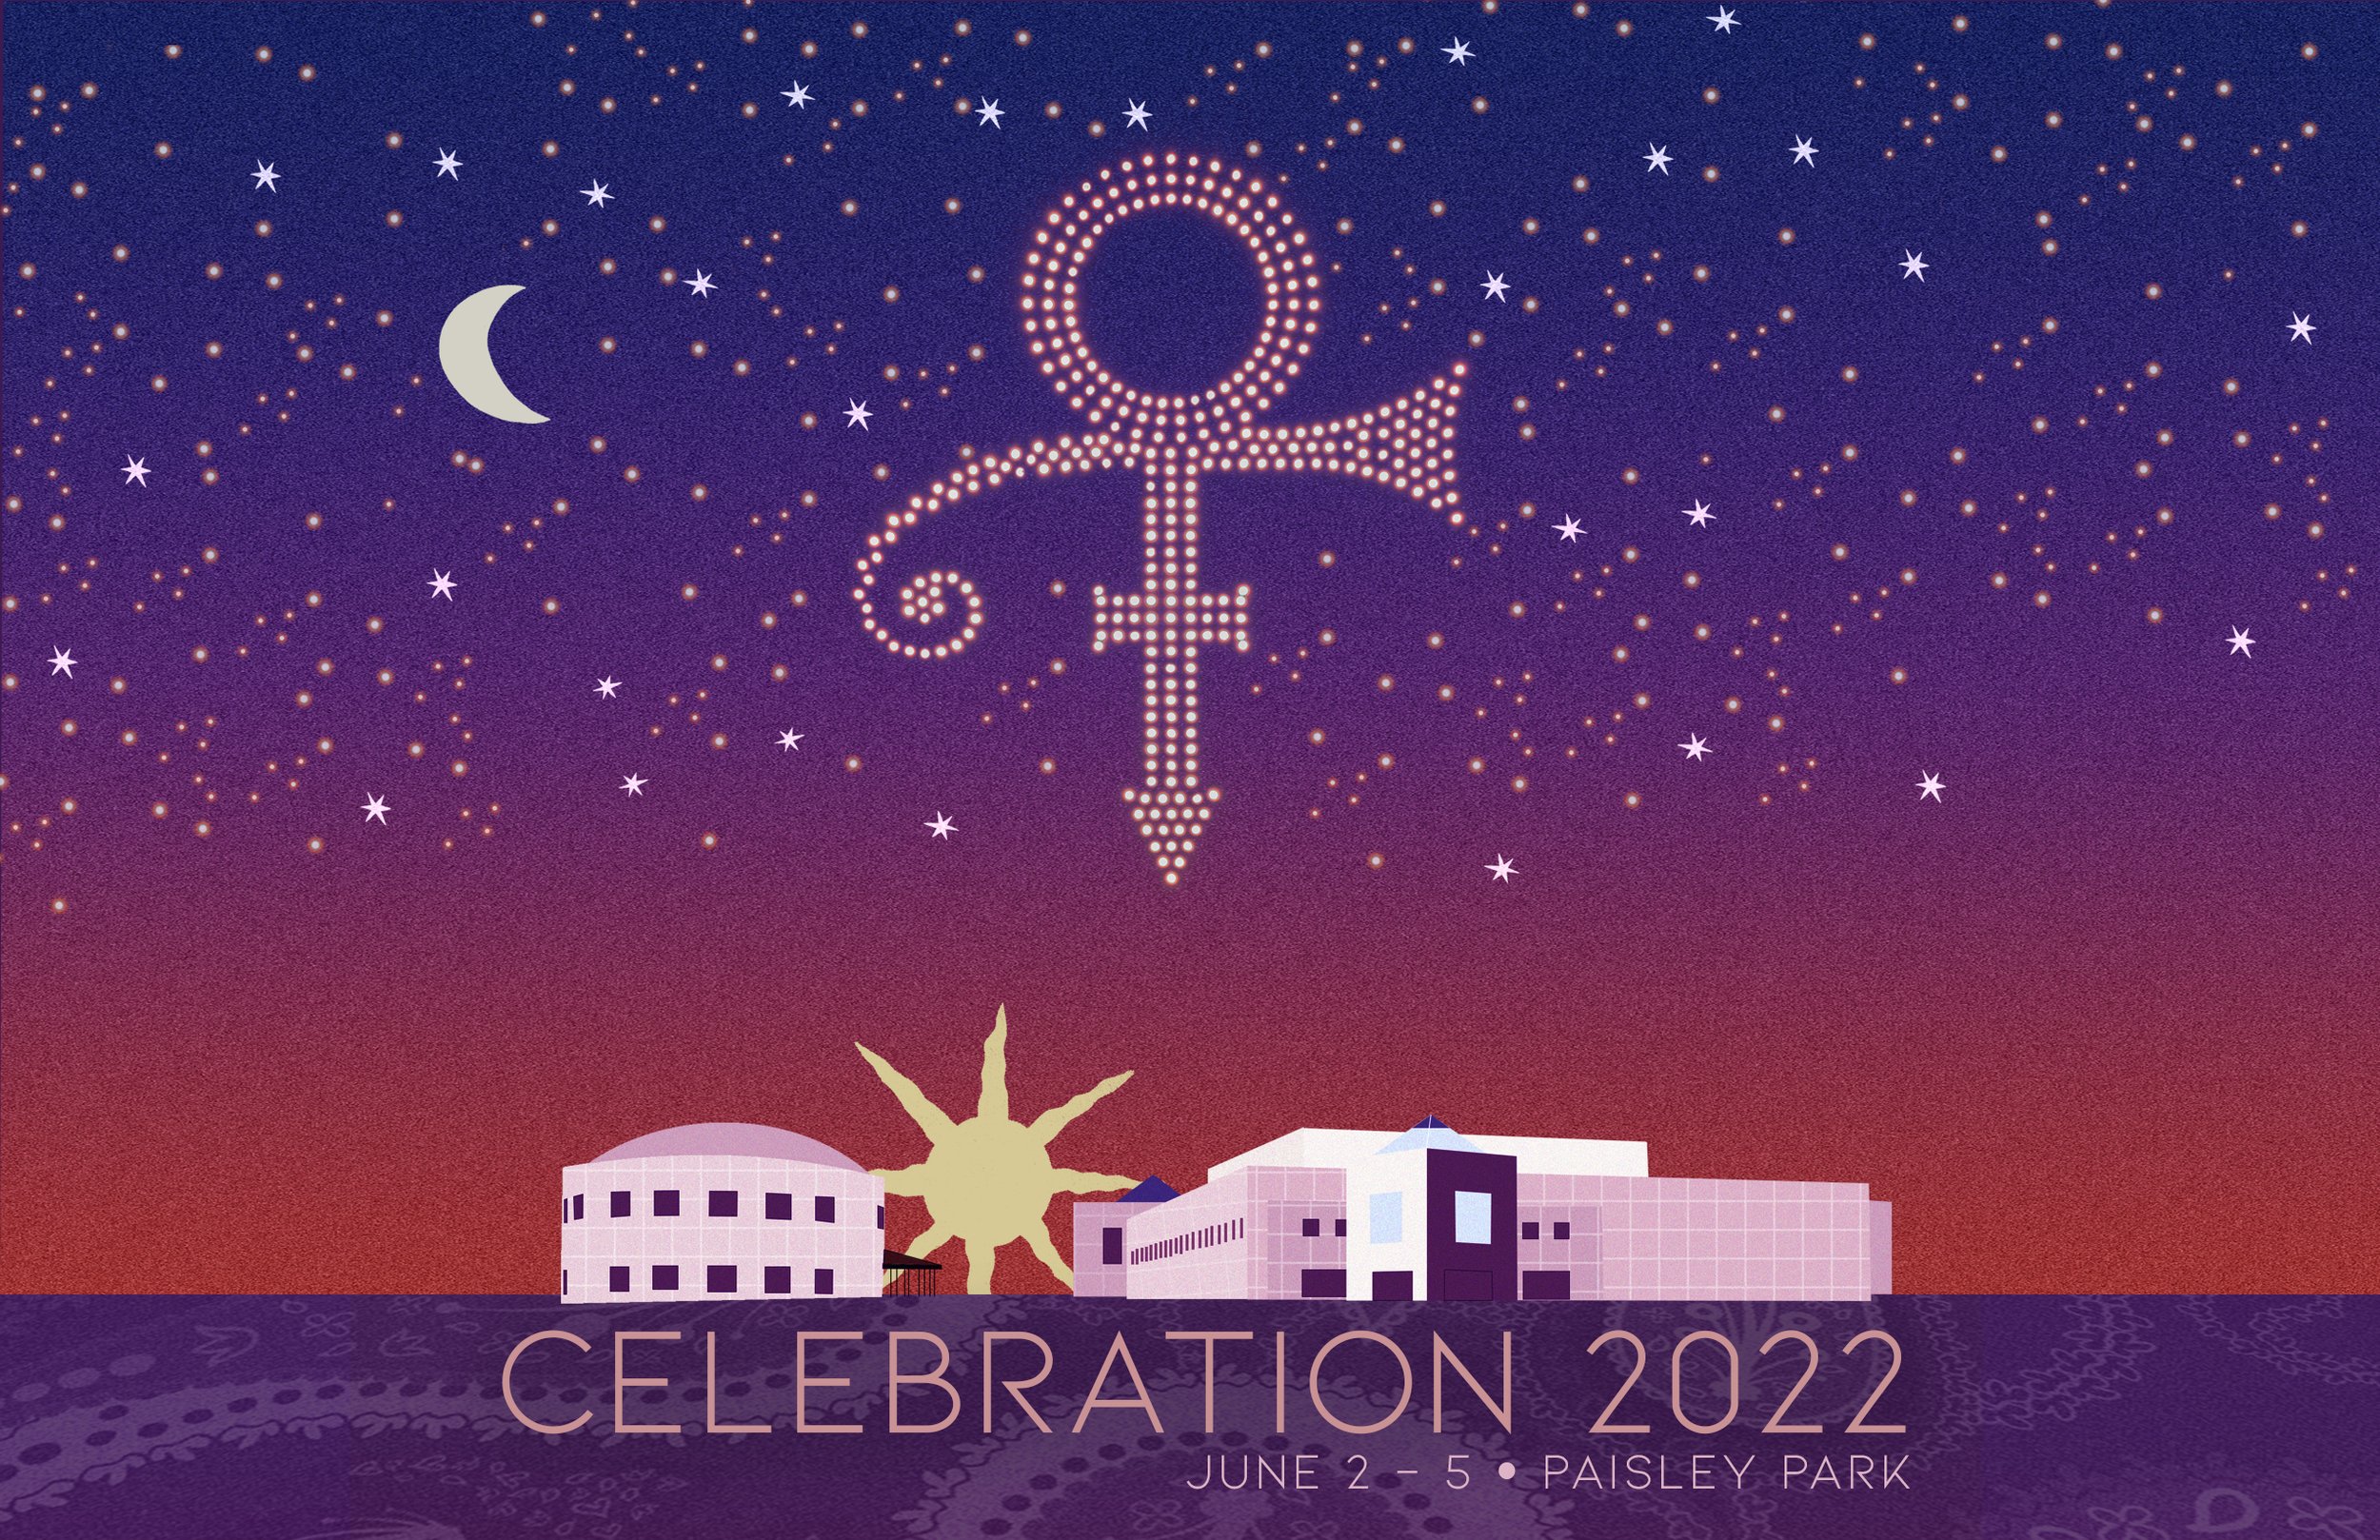 Prince Celebration 2022